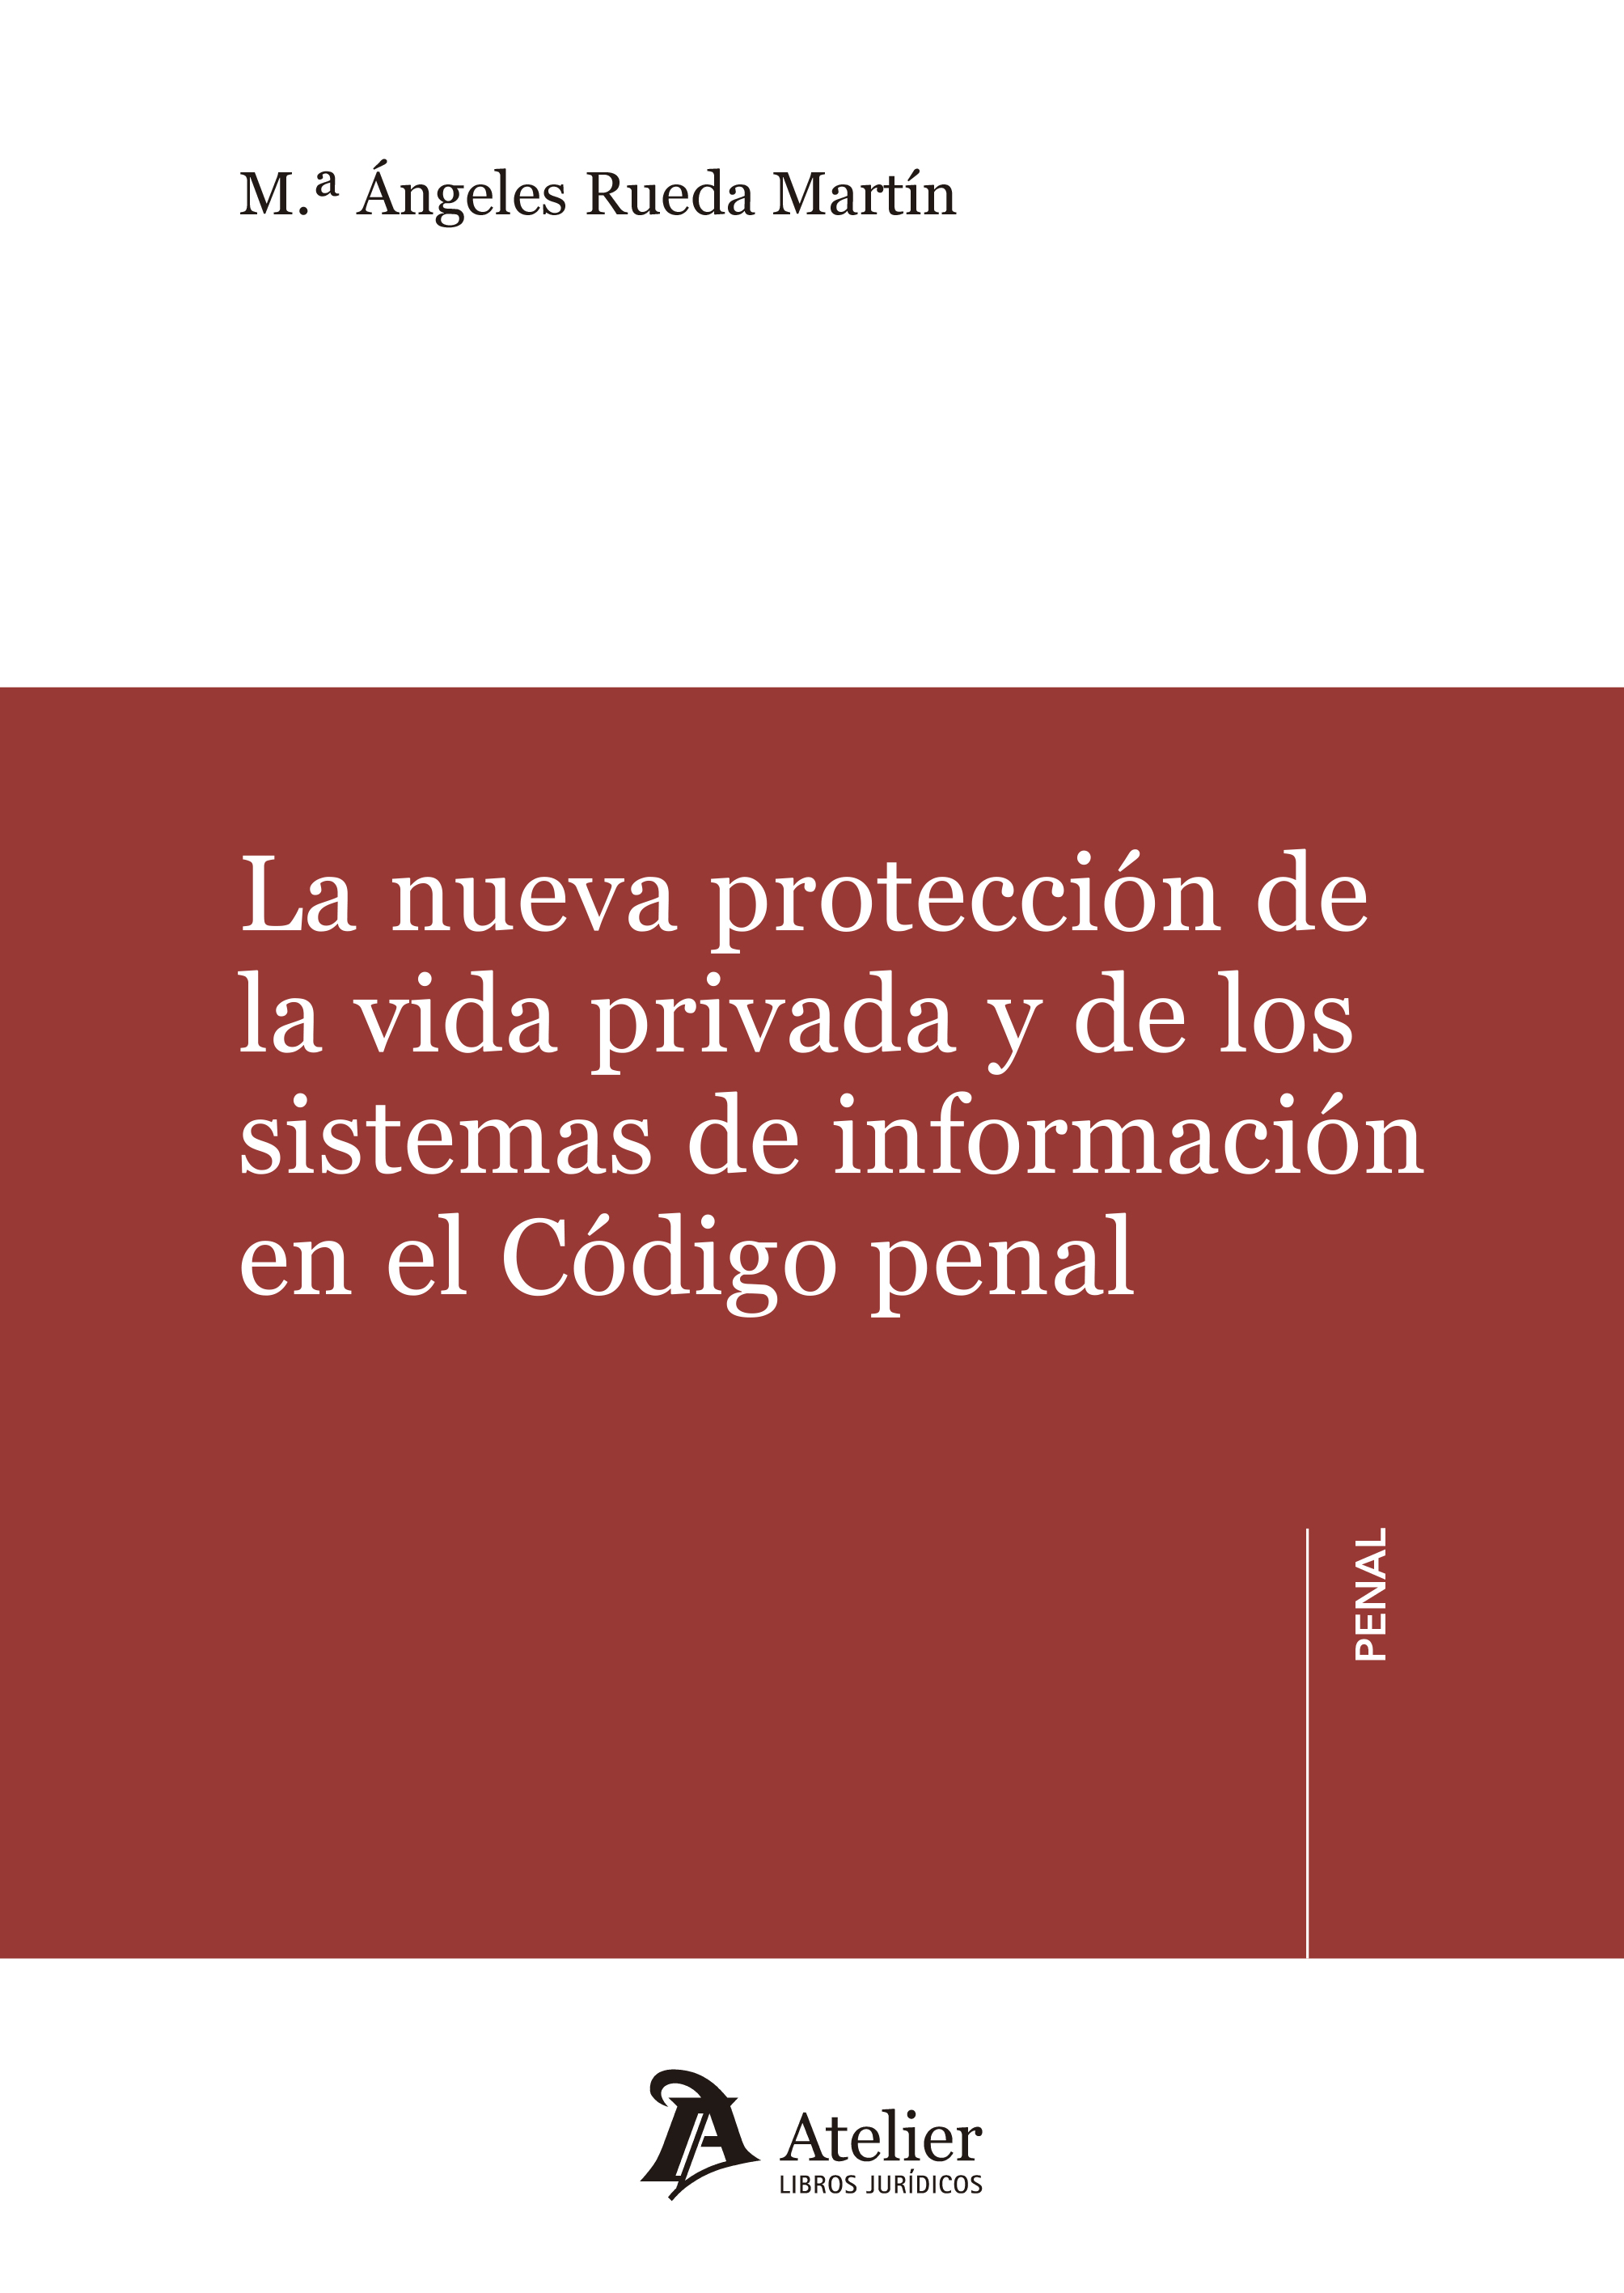 La nueva protección de la vida privada y de los sistemas de información en el Código Penal